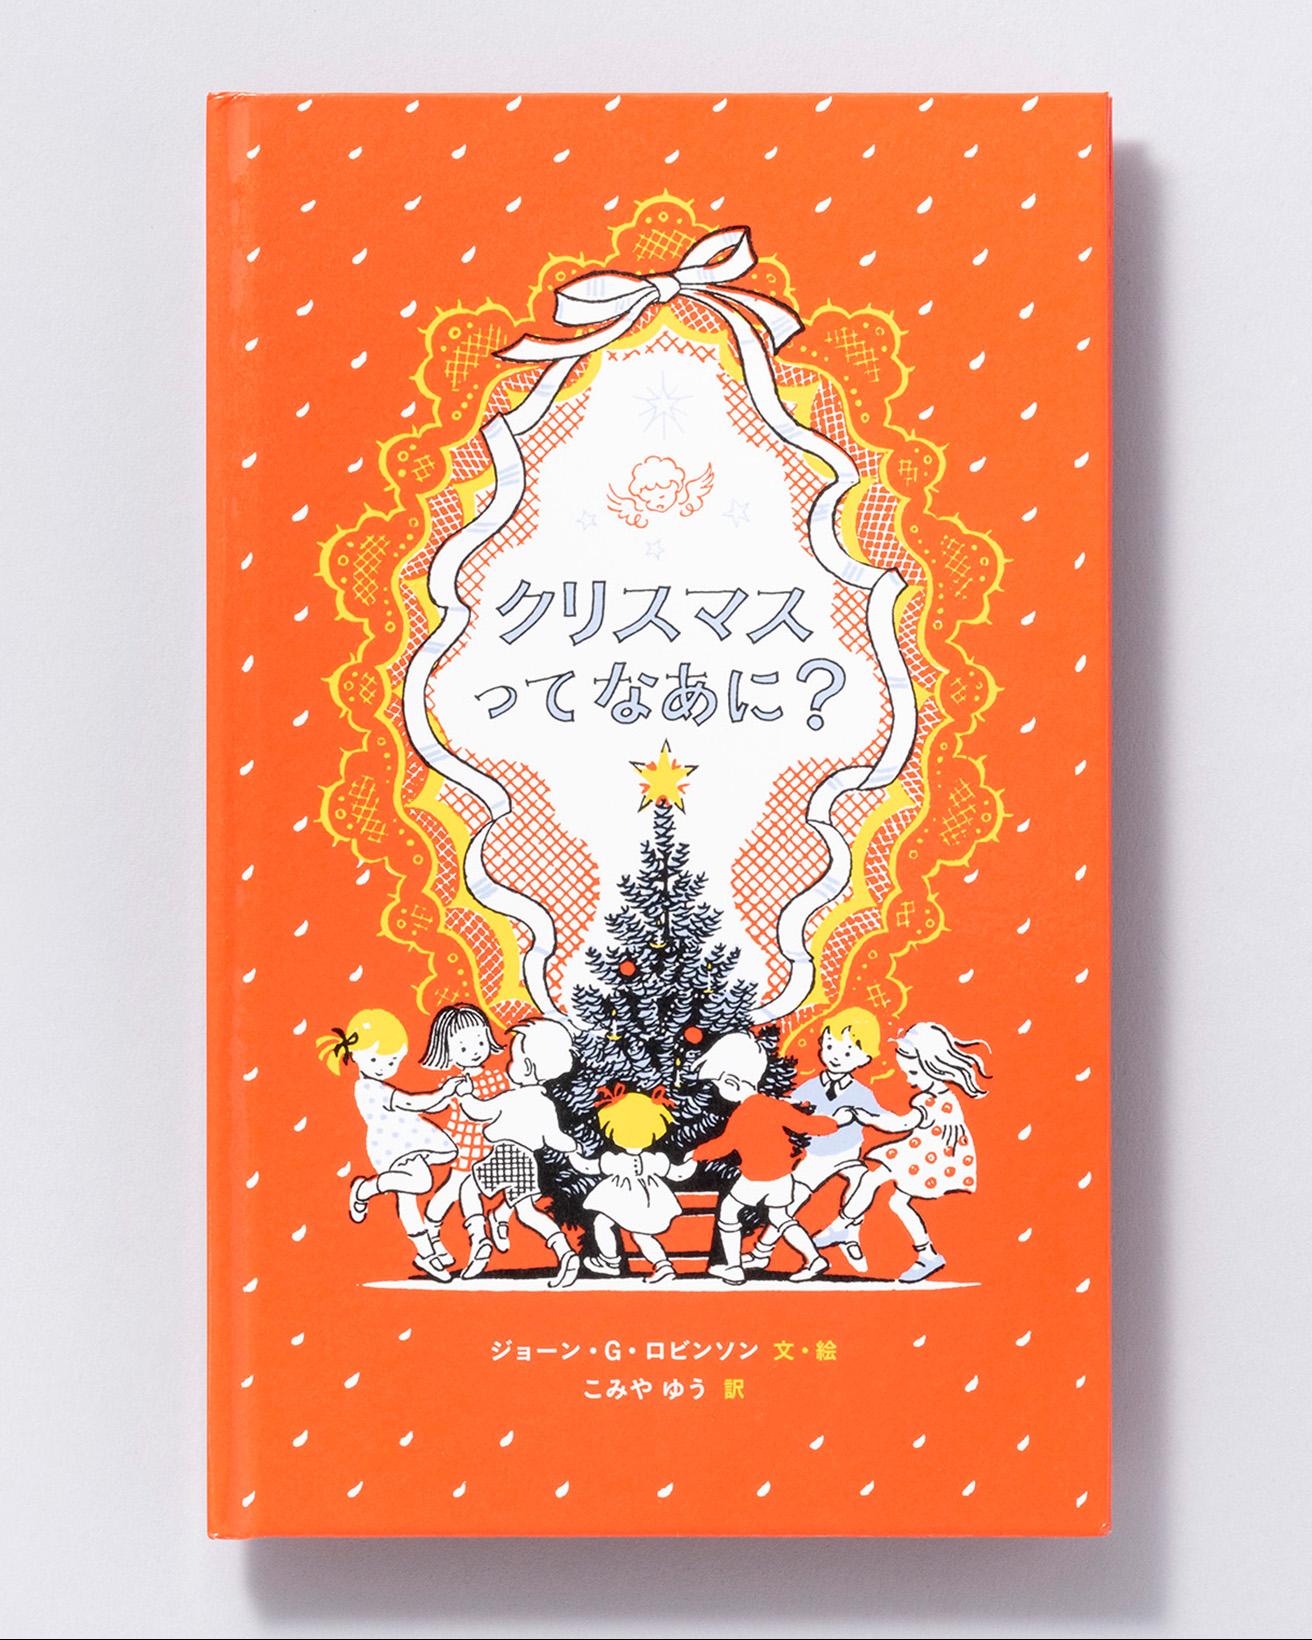 『クリスマスってなあに？』文・絵：ジョーン・G・ロビンソン 訳：こみやゆう。岩波書店 1,430円／2012年。